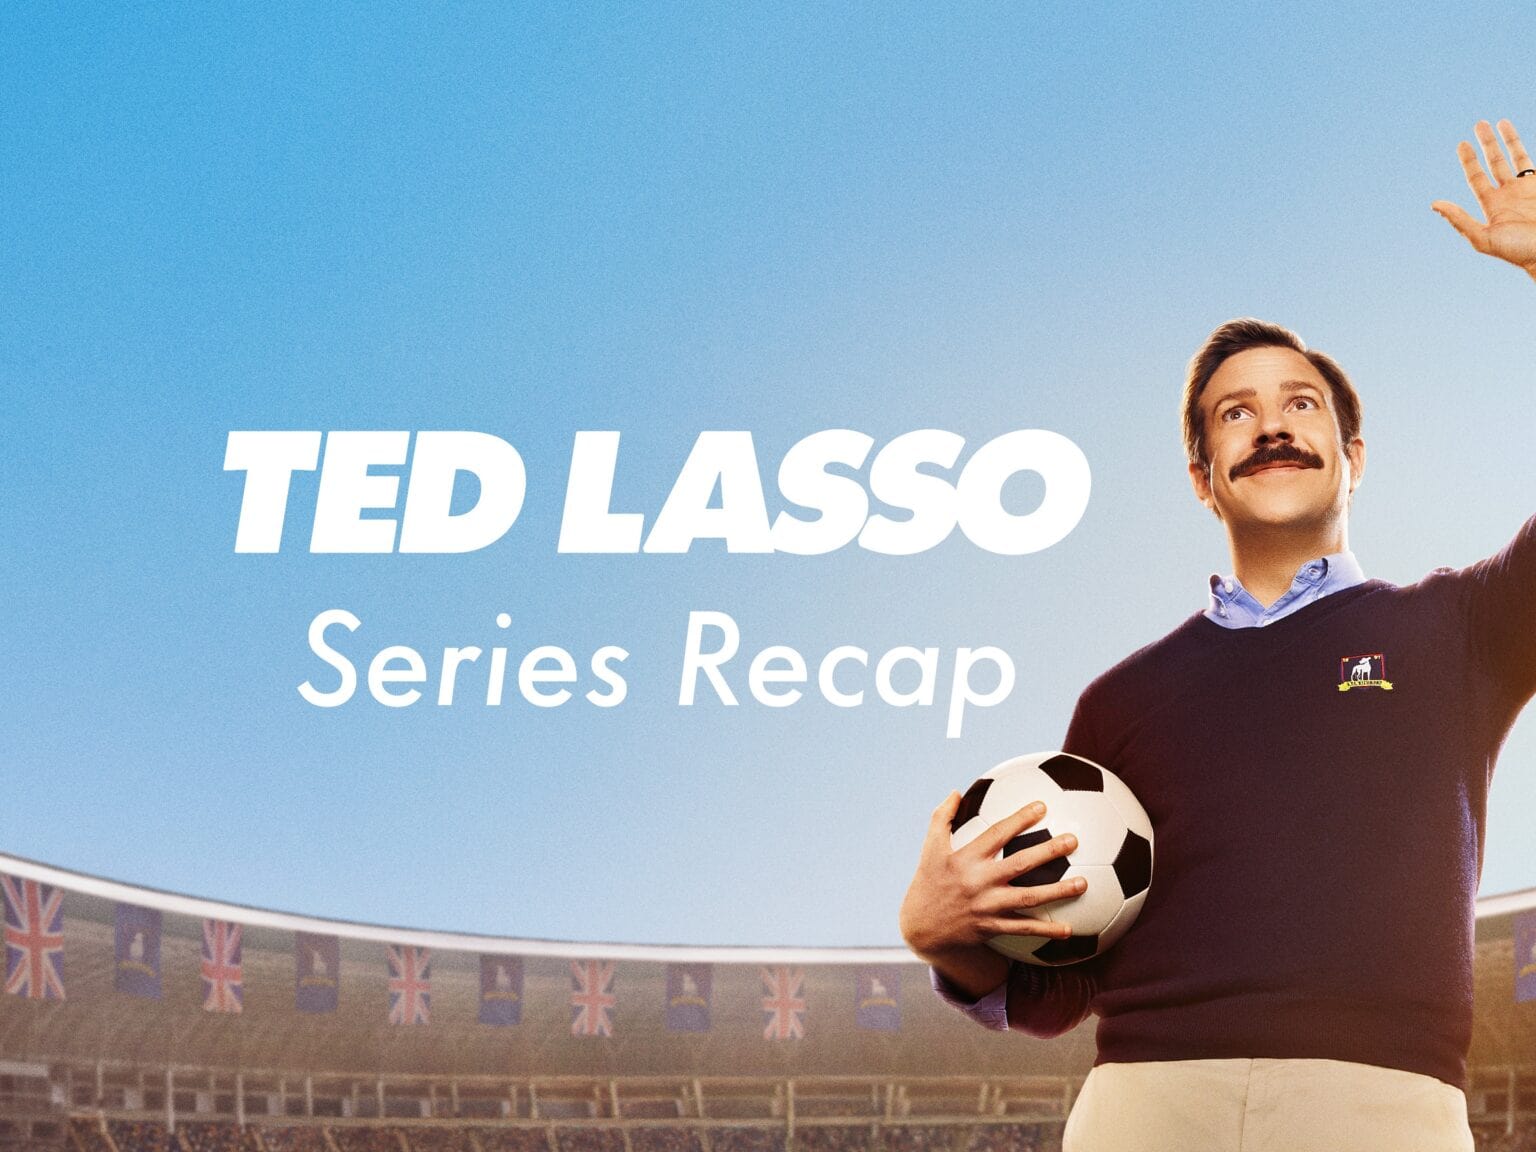 Ted Lasso Series Recap